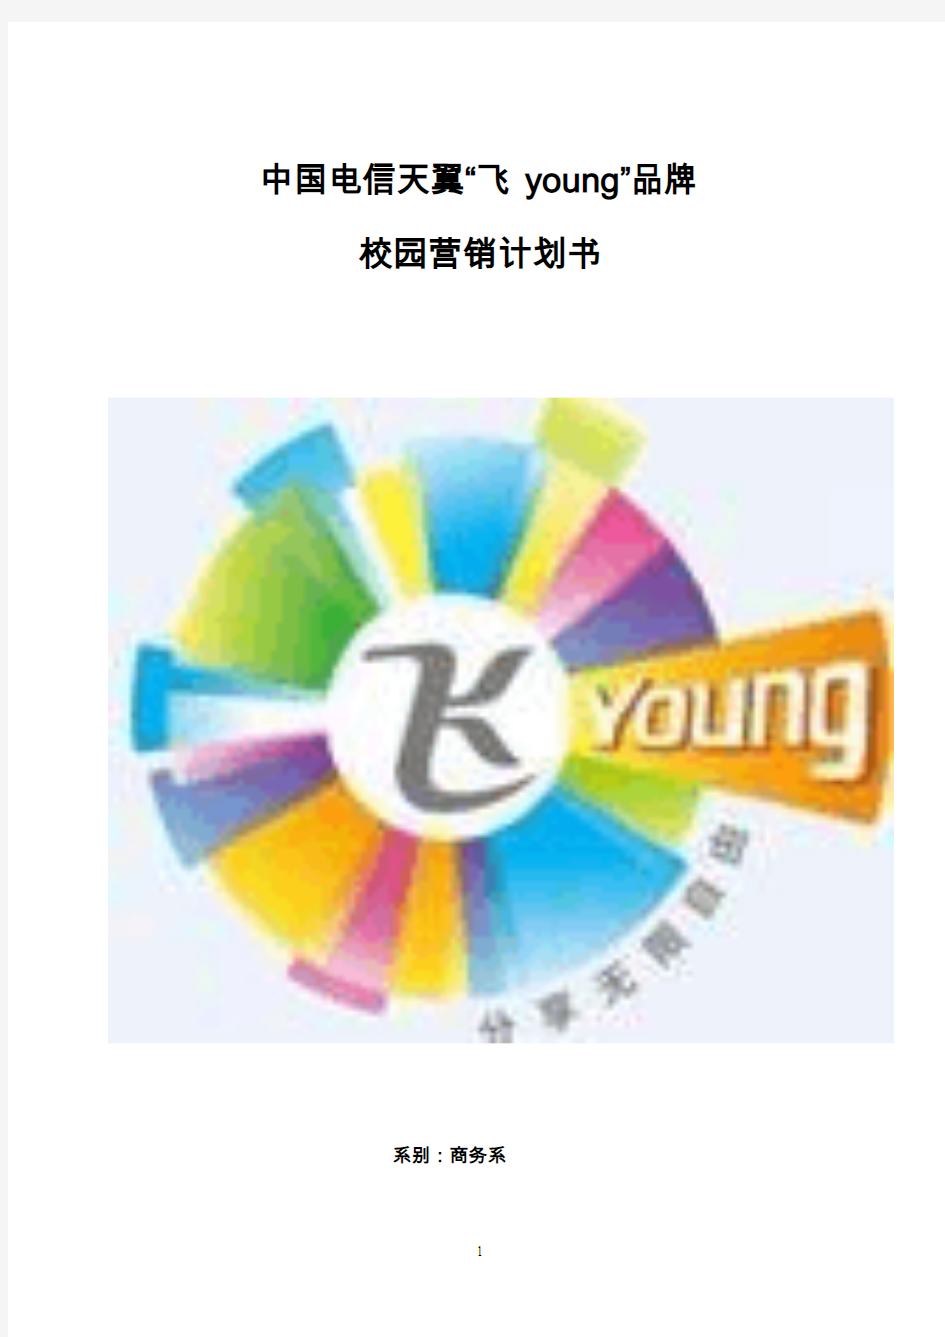 中国电信天翼“飞young”品牌